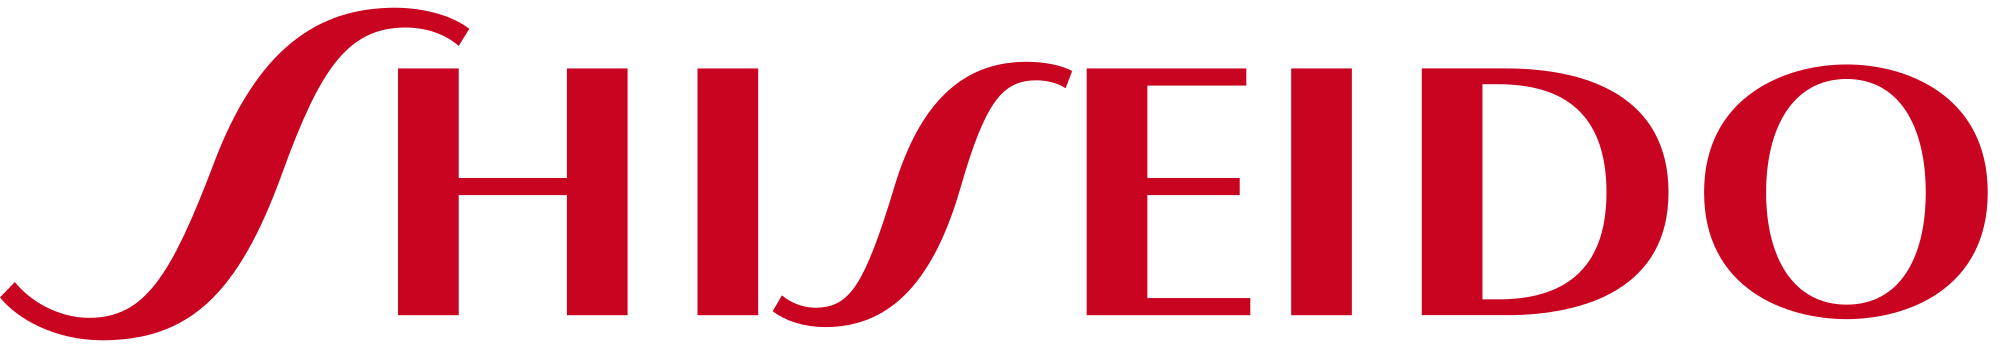 Shiseido-Logo.png